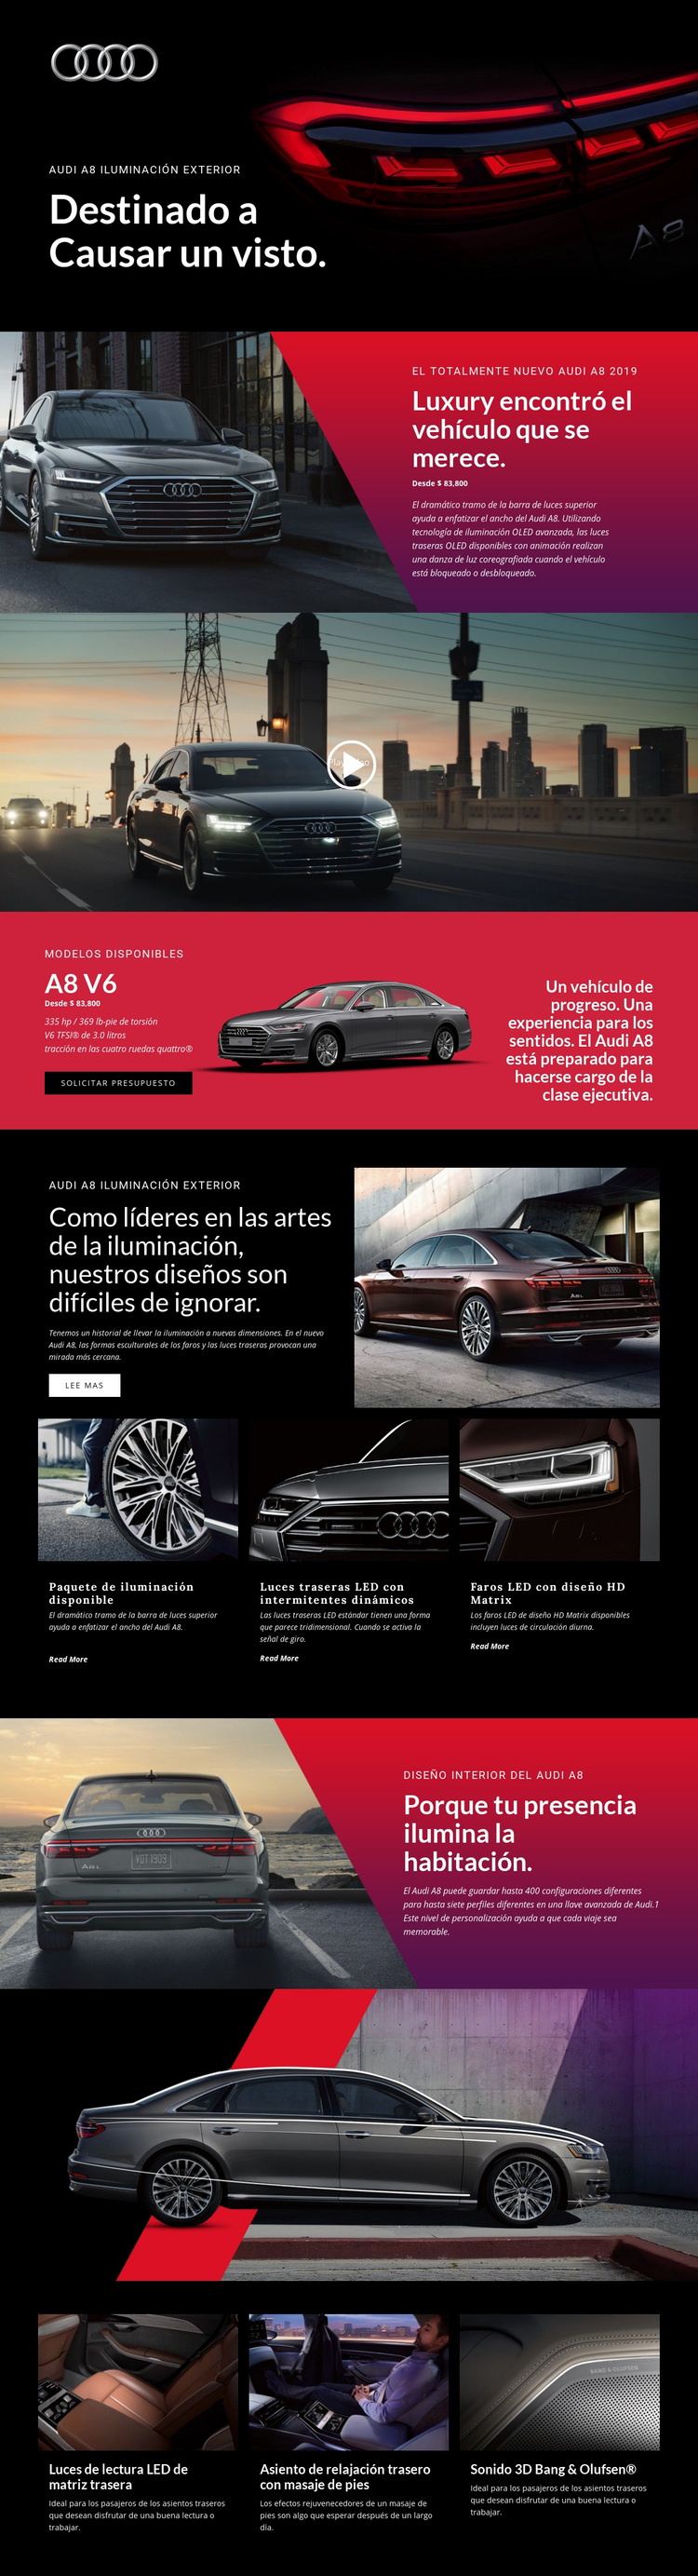 Coches de lujo Audi Tema de WordPress